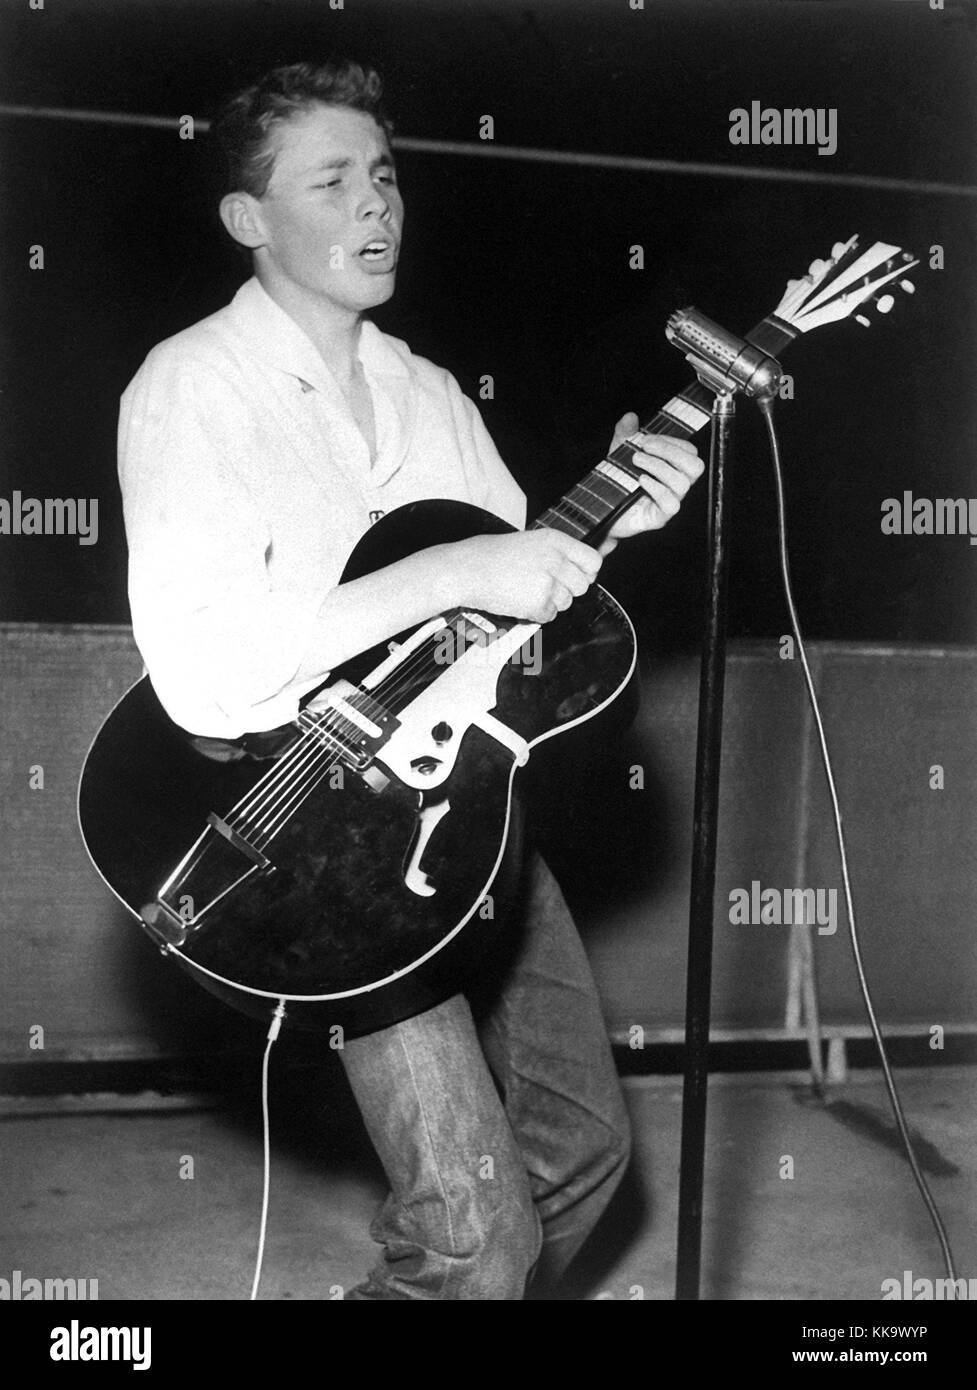 Peter Kraus, 17 ans, et sur son chemin de la réussite d'effectuer du rock'n roll sur scène, photographié le 18 décembre 1956. Dans le monde d'utilisation | Banque D'Images